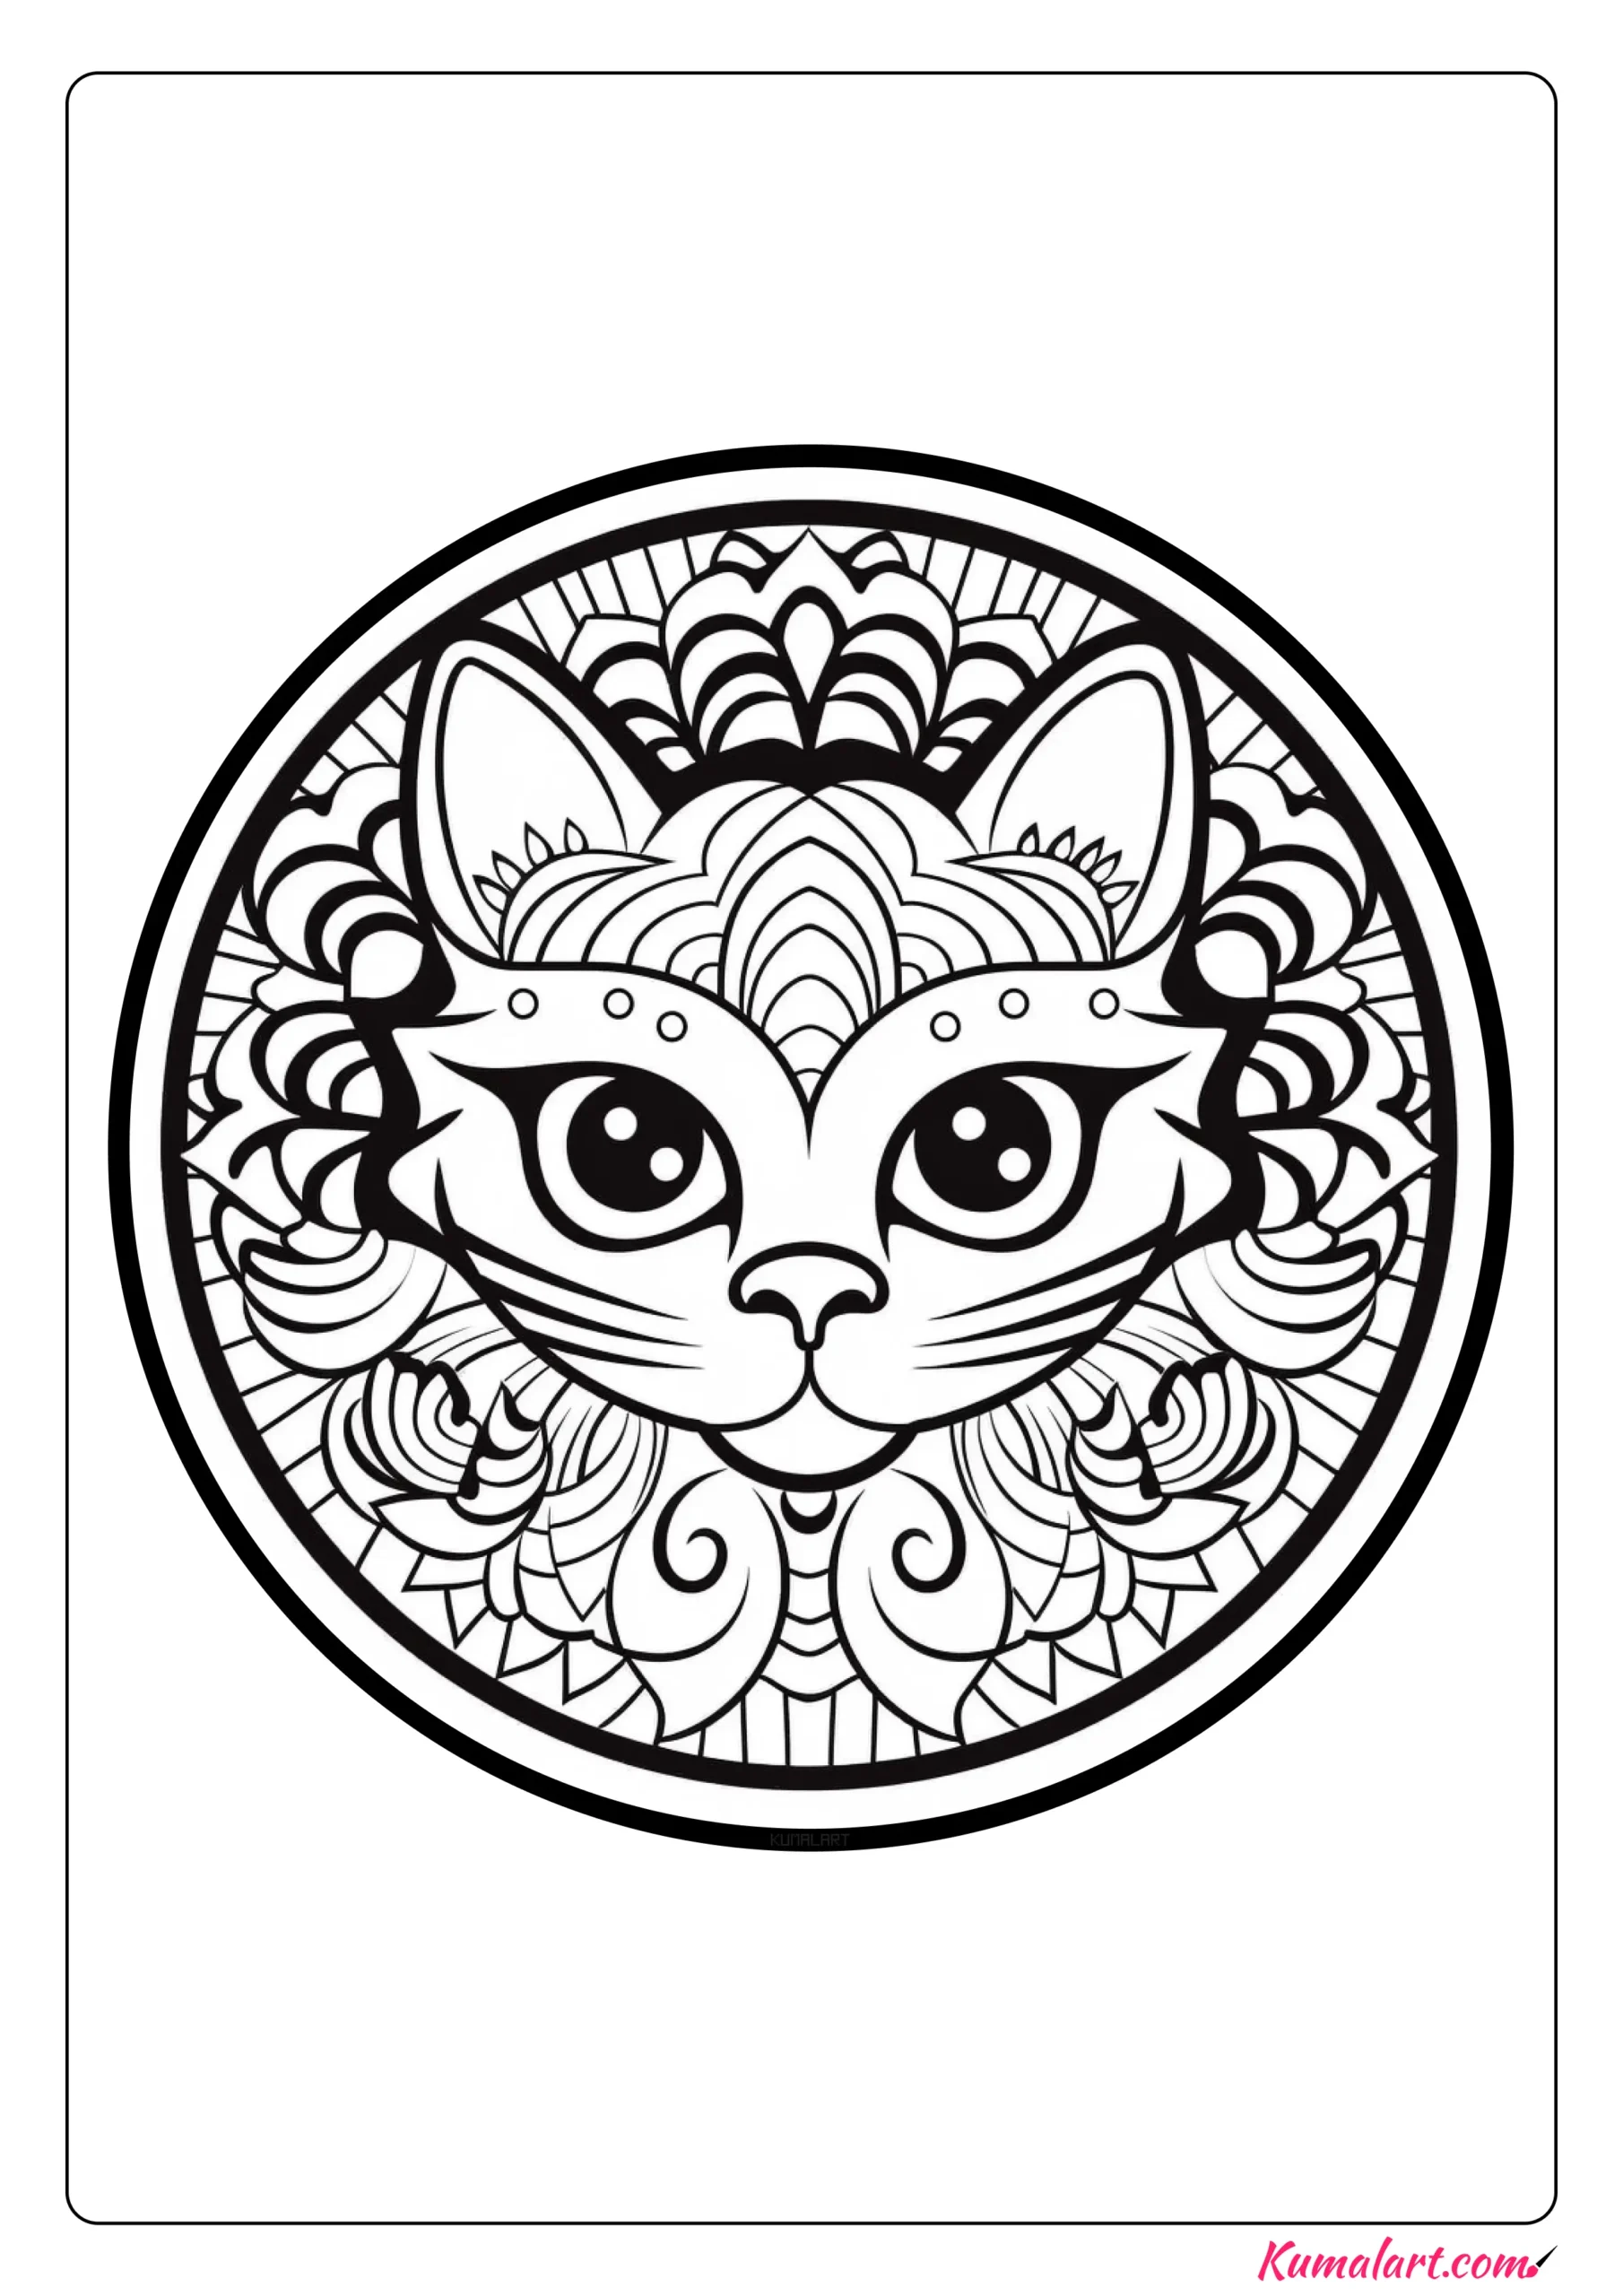 Joanna the Cat Mandala Coloring Page